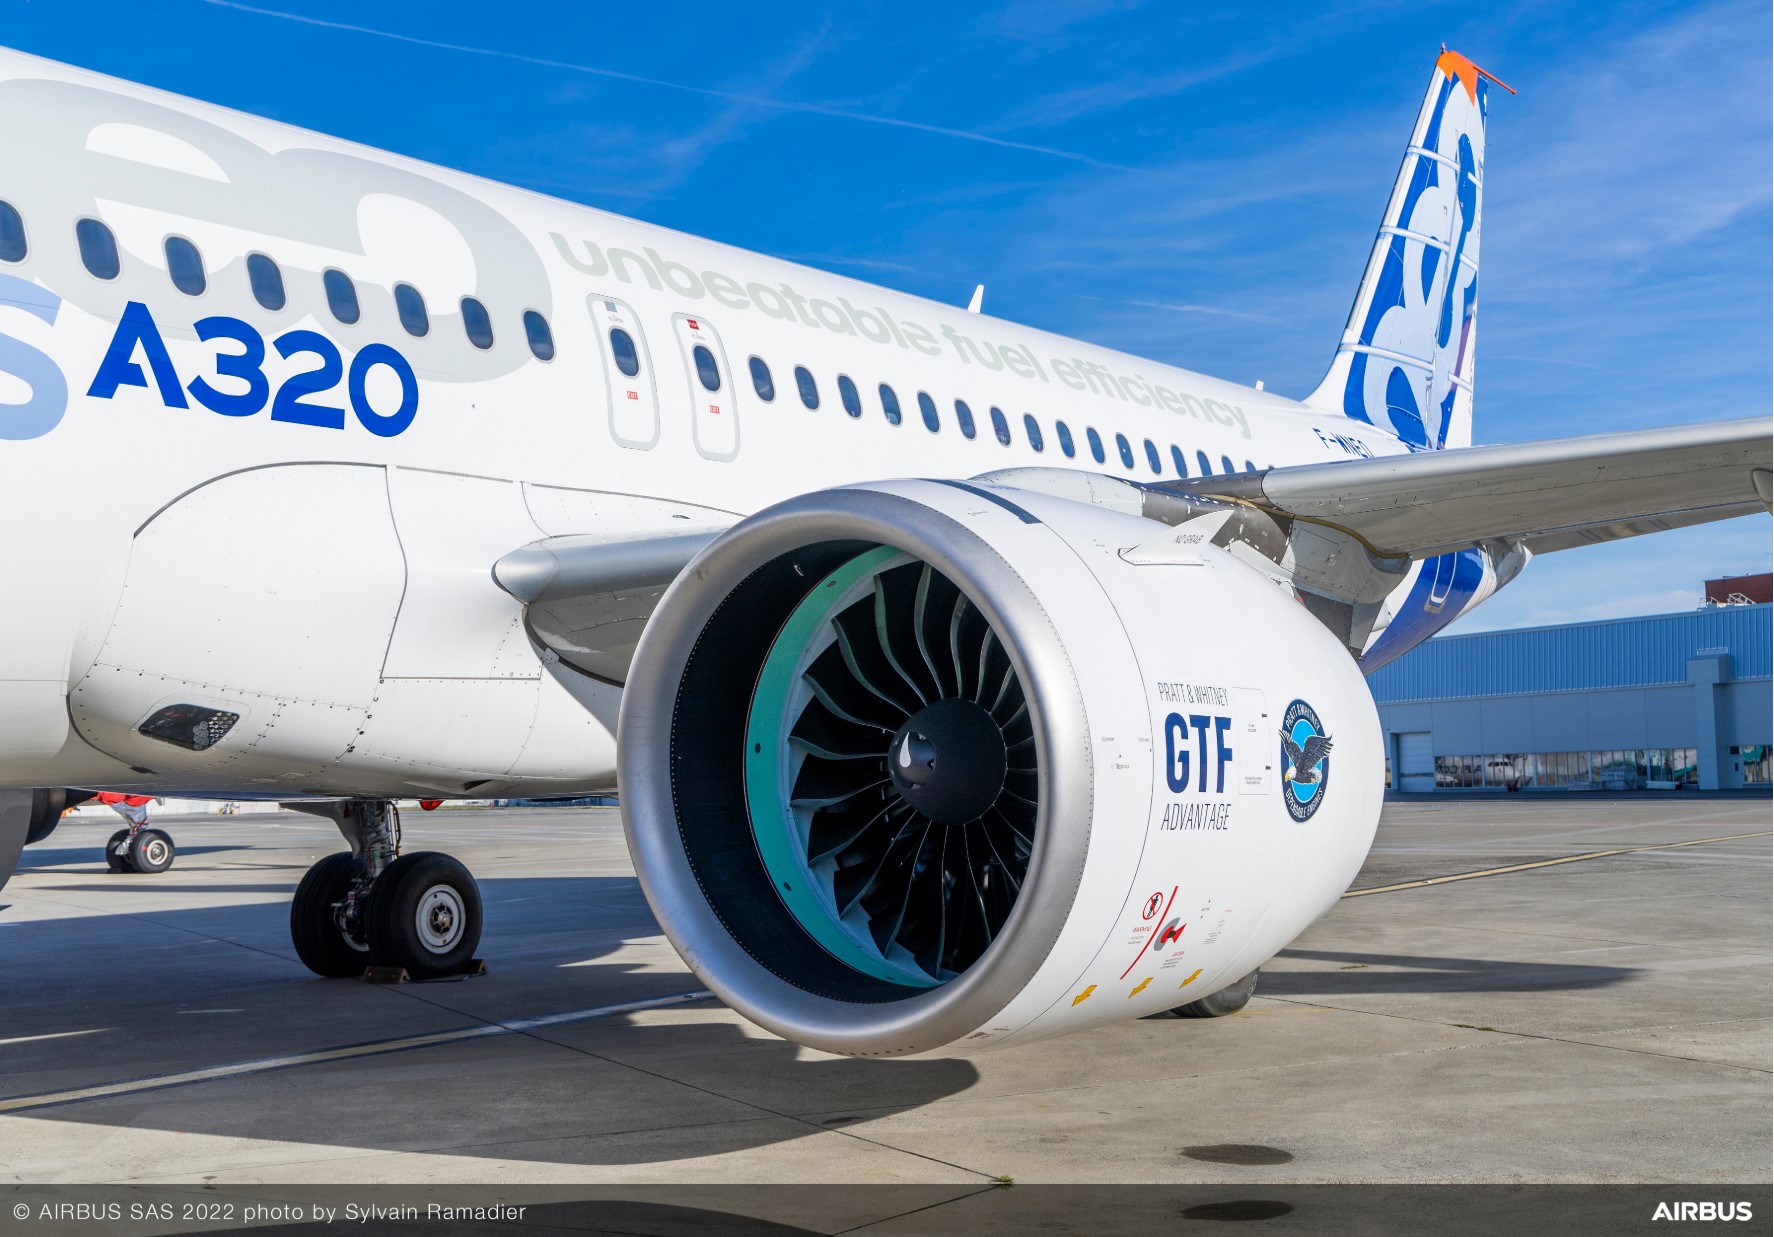 普惠GTF Advantage™发动机开始在空中客车A320neo飞机上试飞